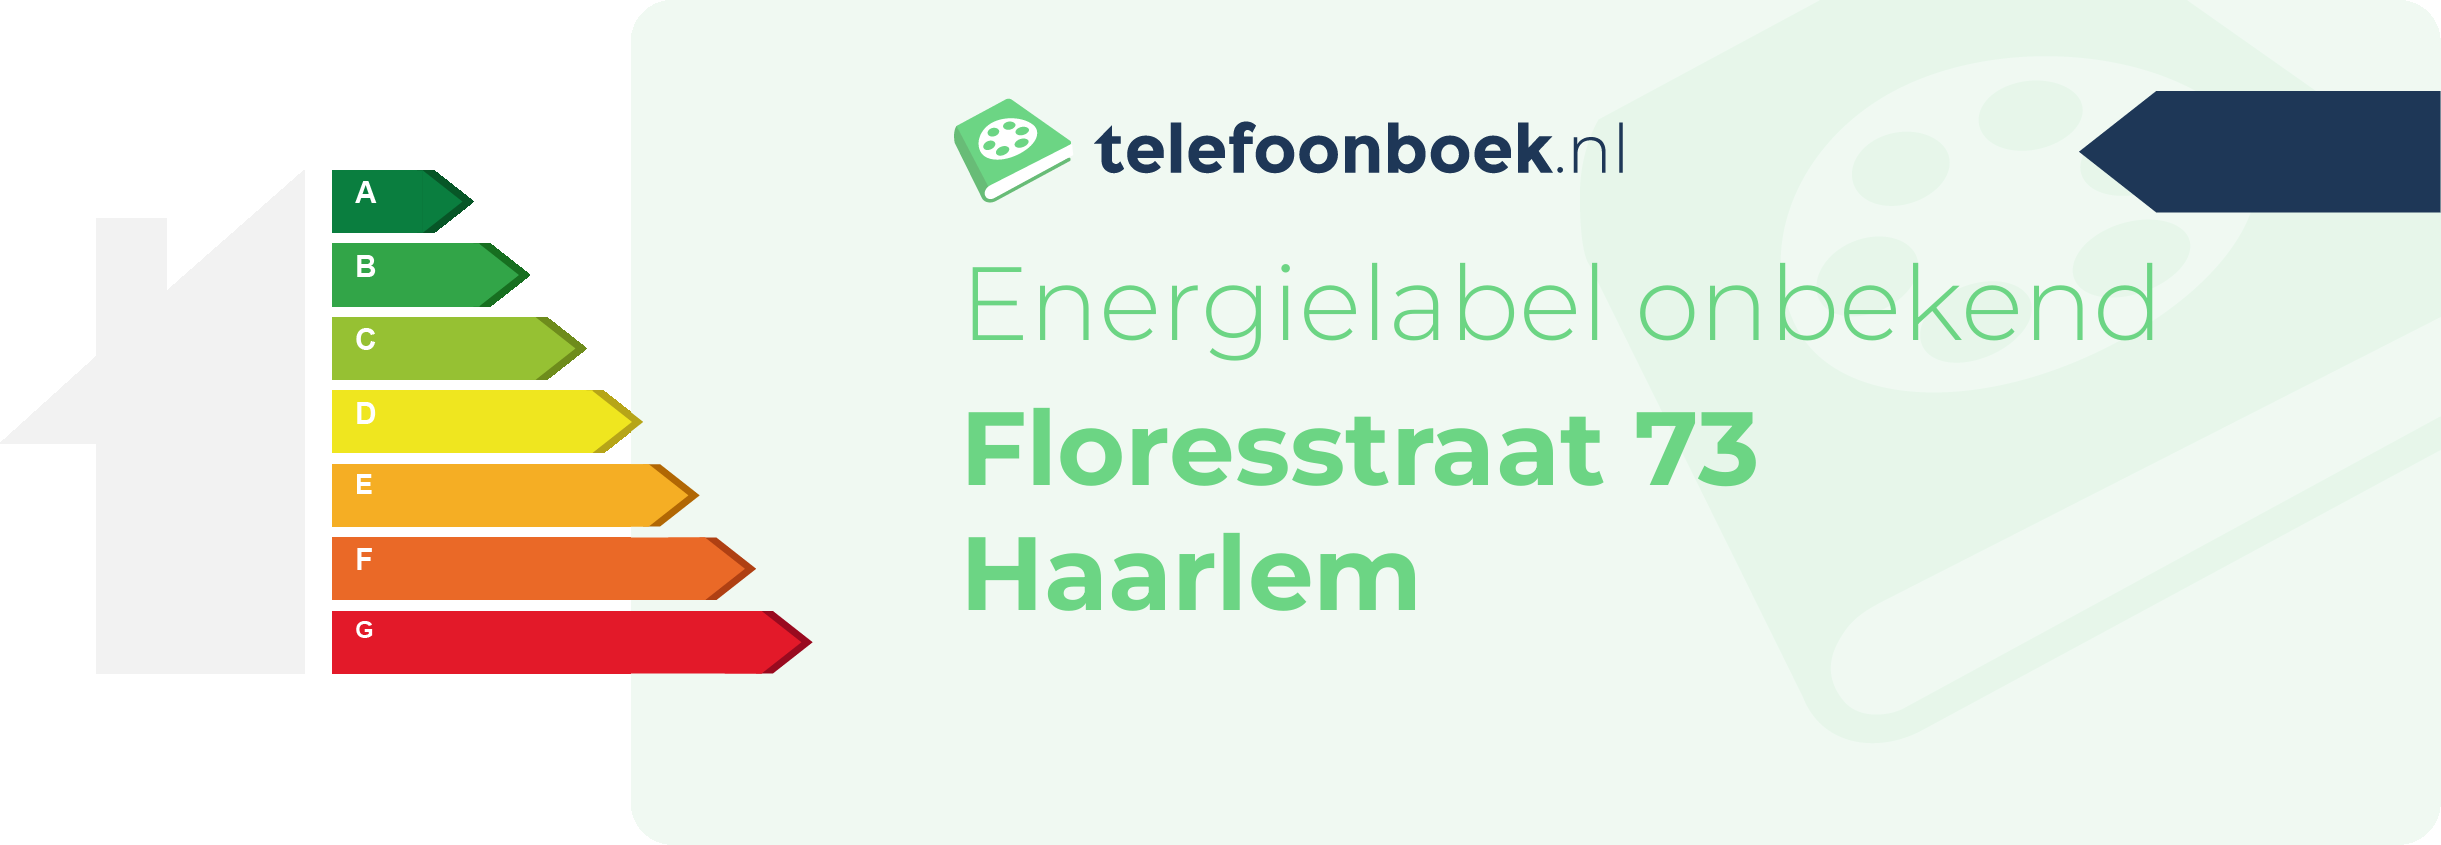 Energielabel Floresstraat 73 Haarlem